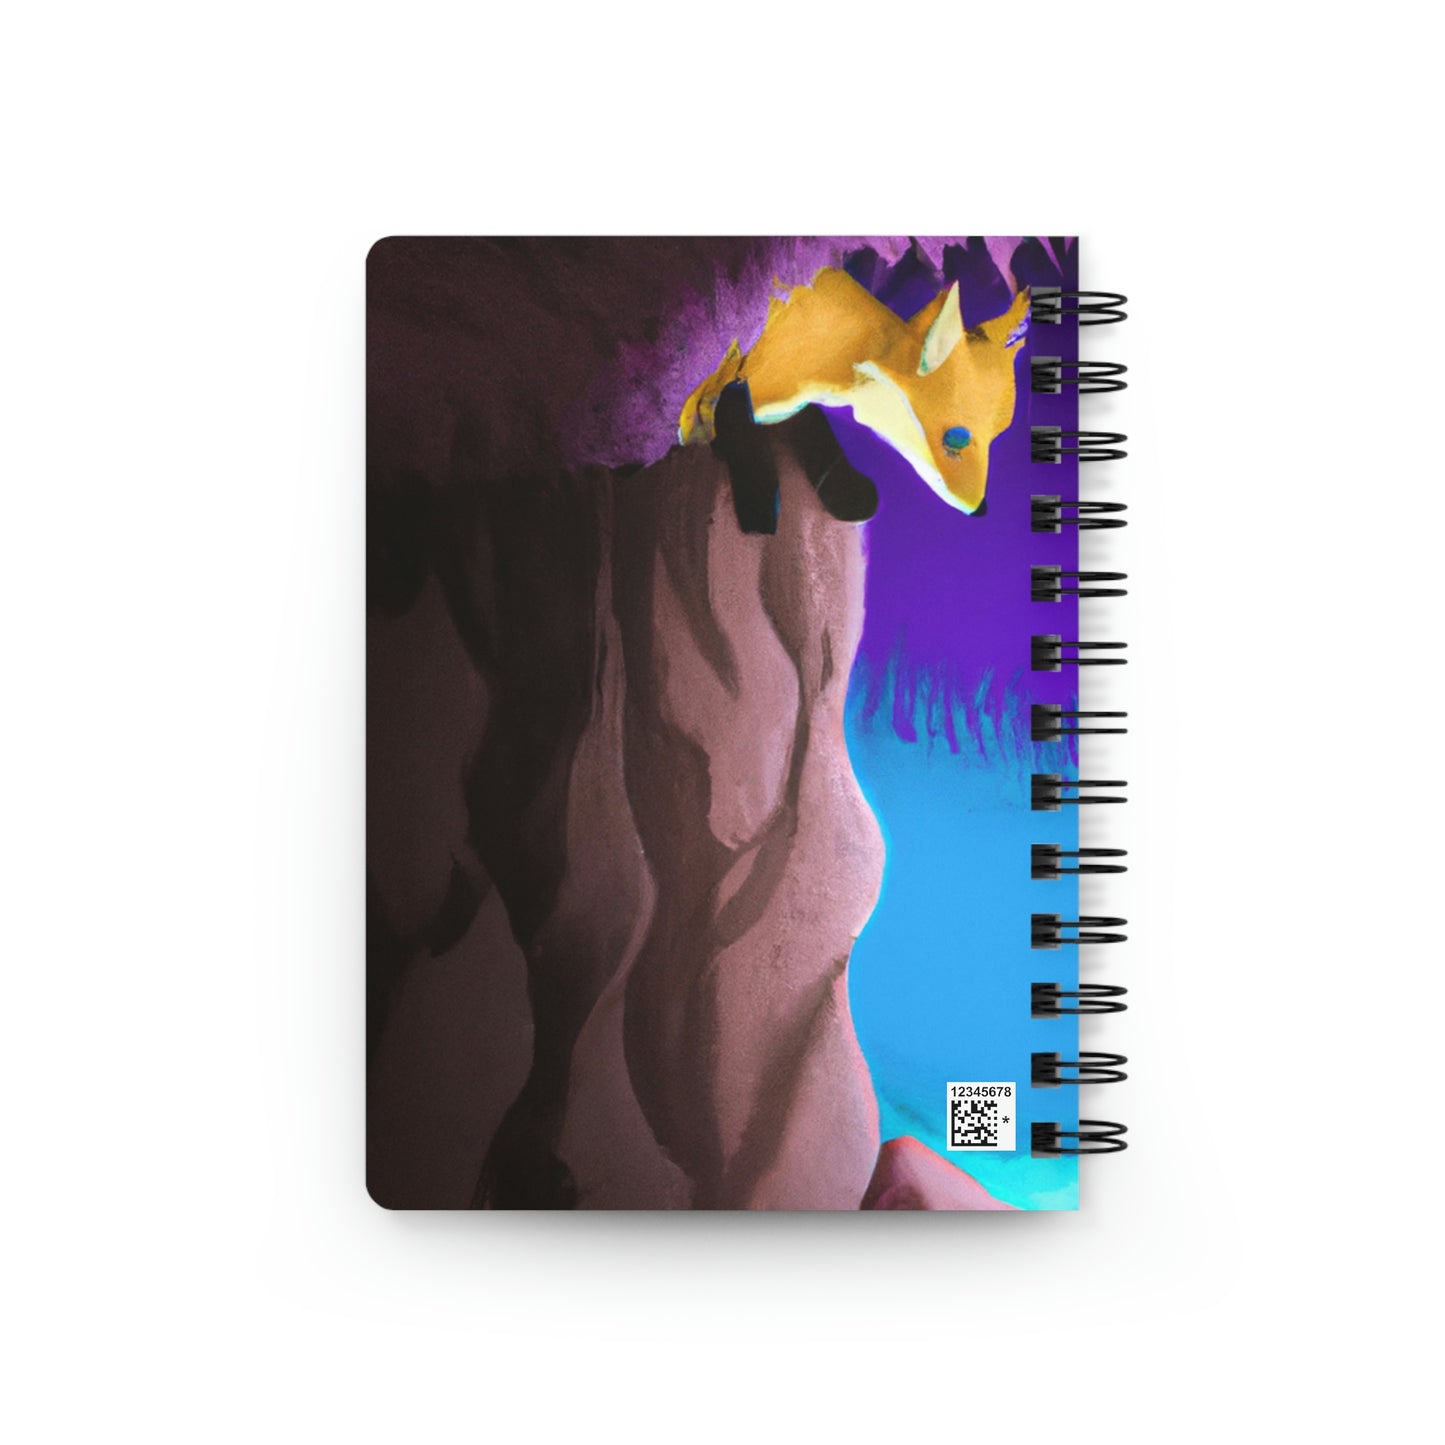 El zorro en la caverna - El alienígena Cuaderno encuadernado en espiral